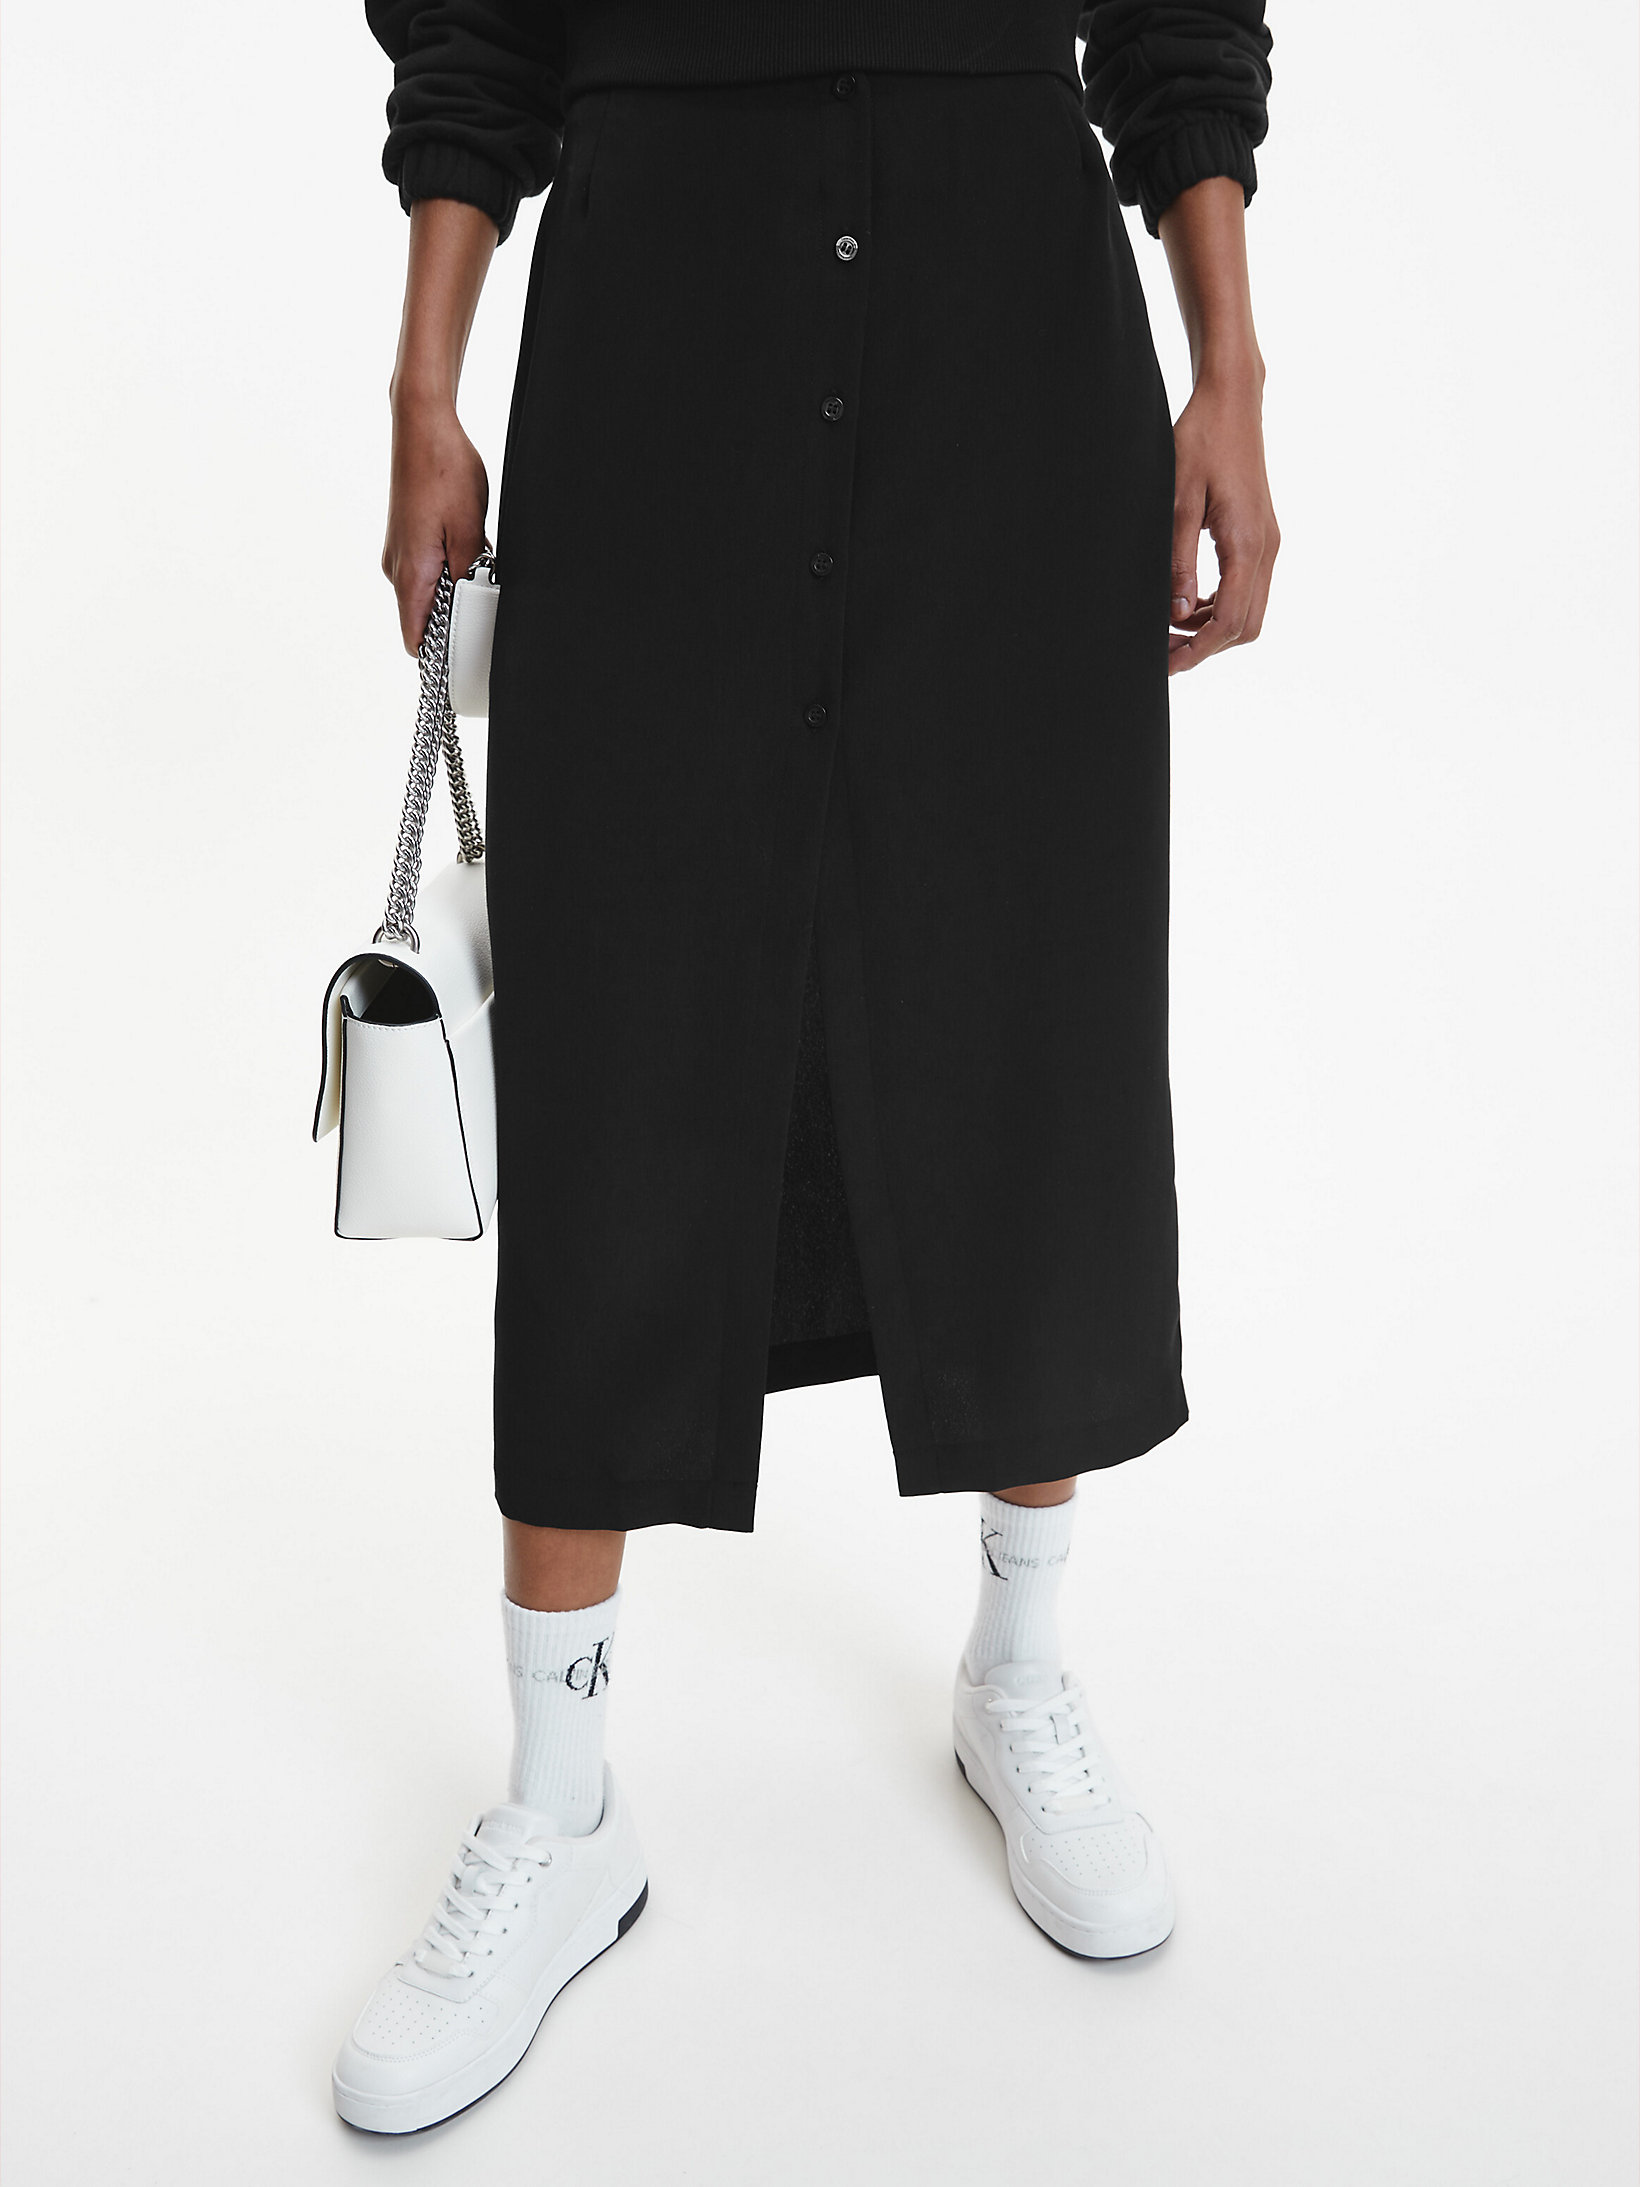 Jupe Longueur Midi Boutonnée En Tissu Recyclé > CK Black > undefined femmes > Calvin Klein